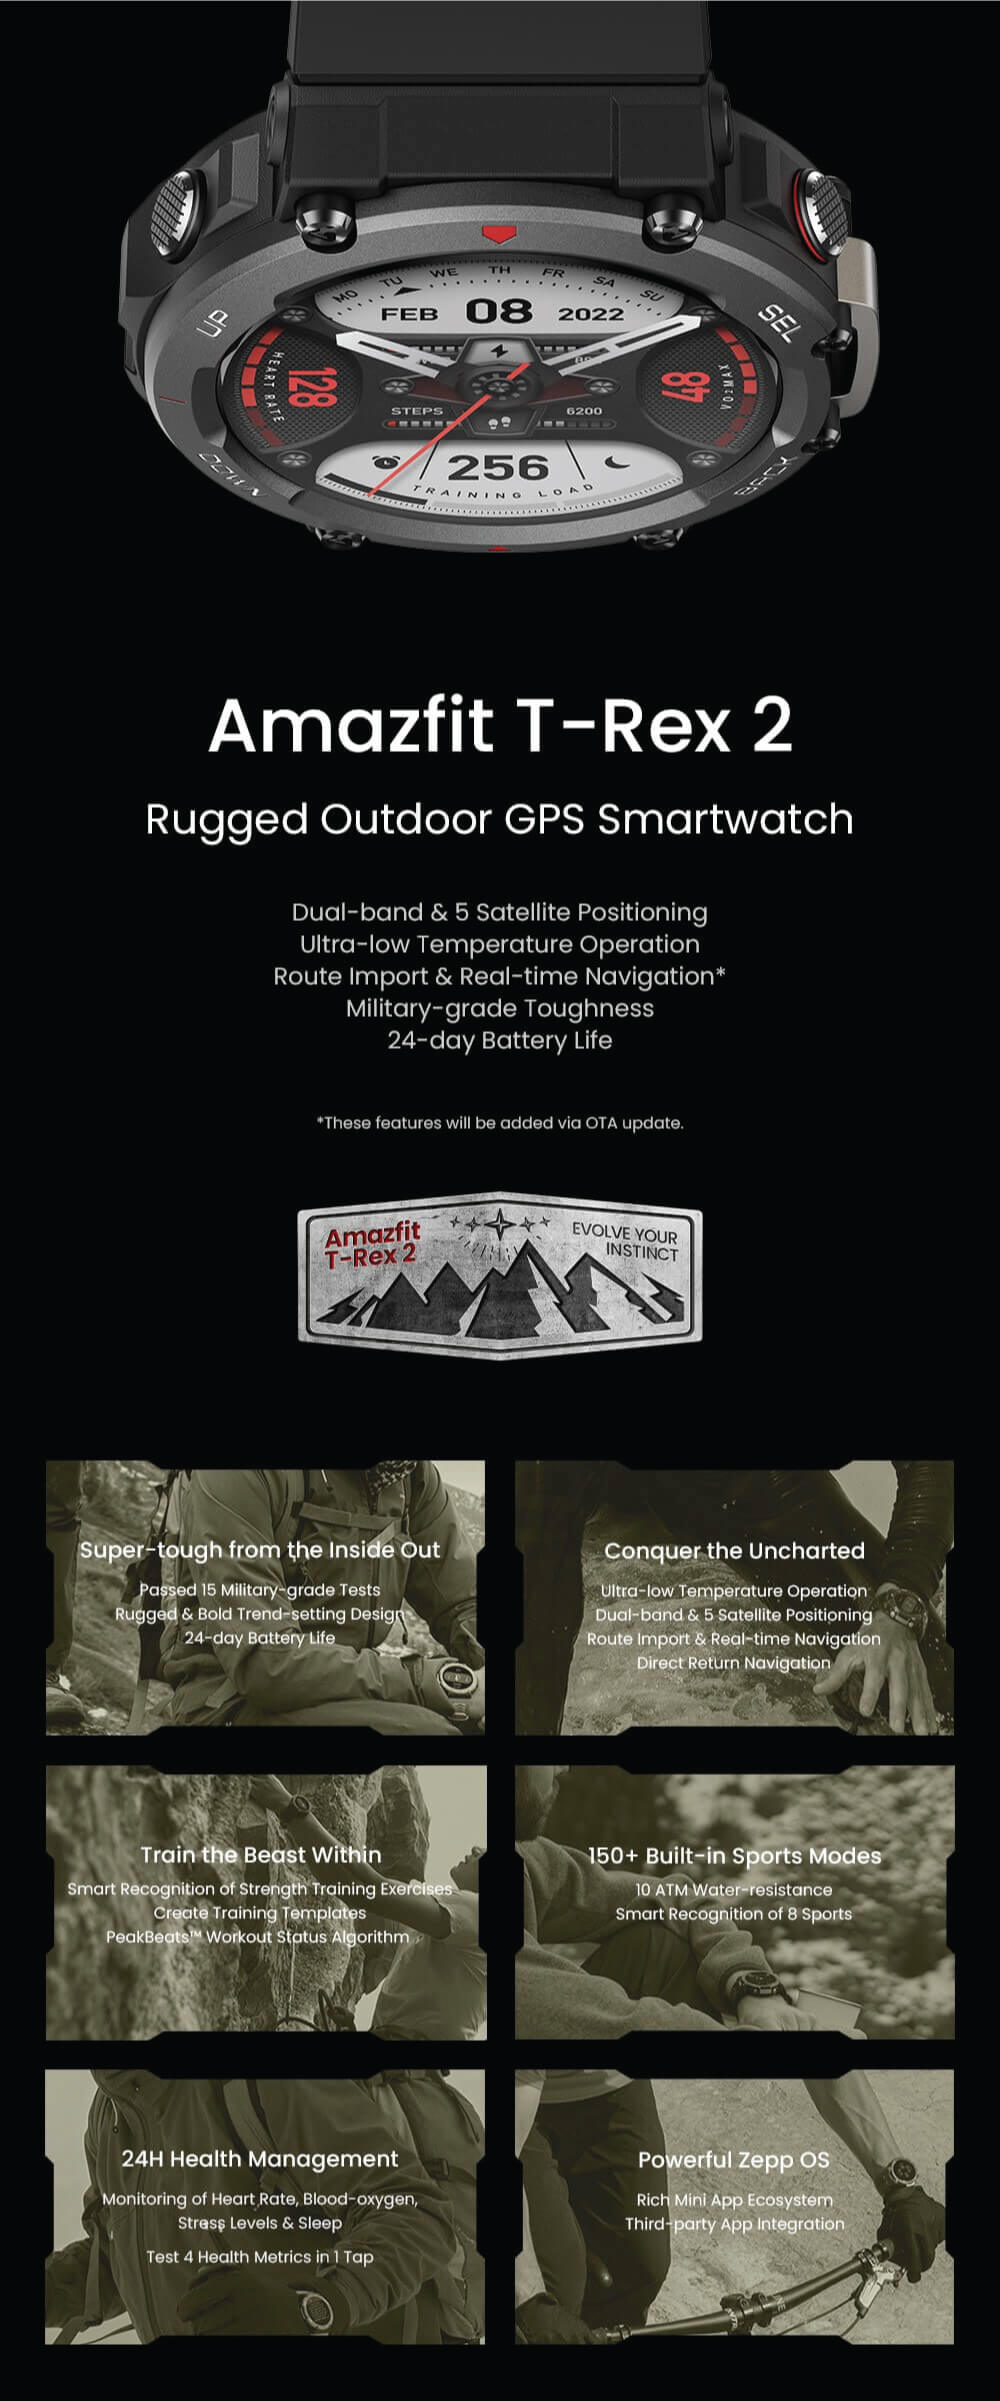 Amazfit Trex 2